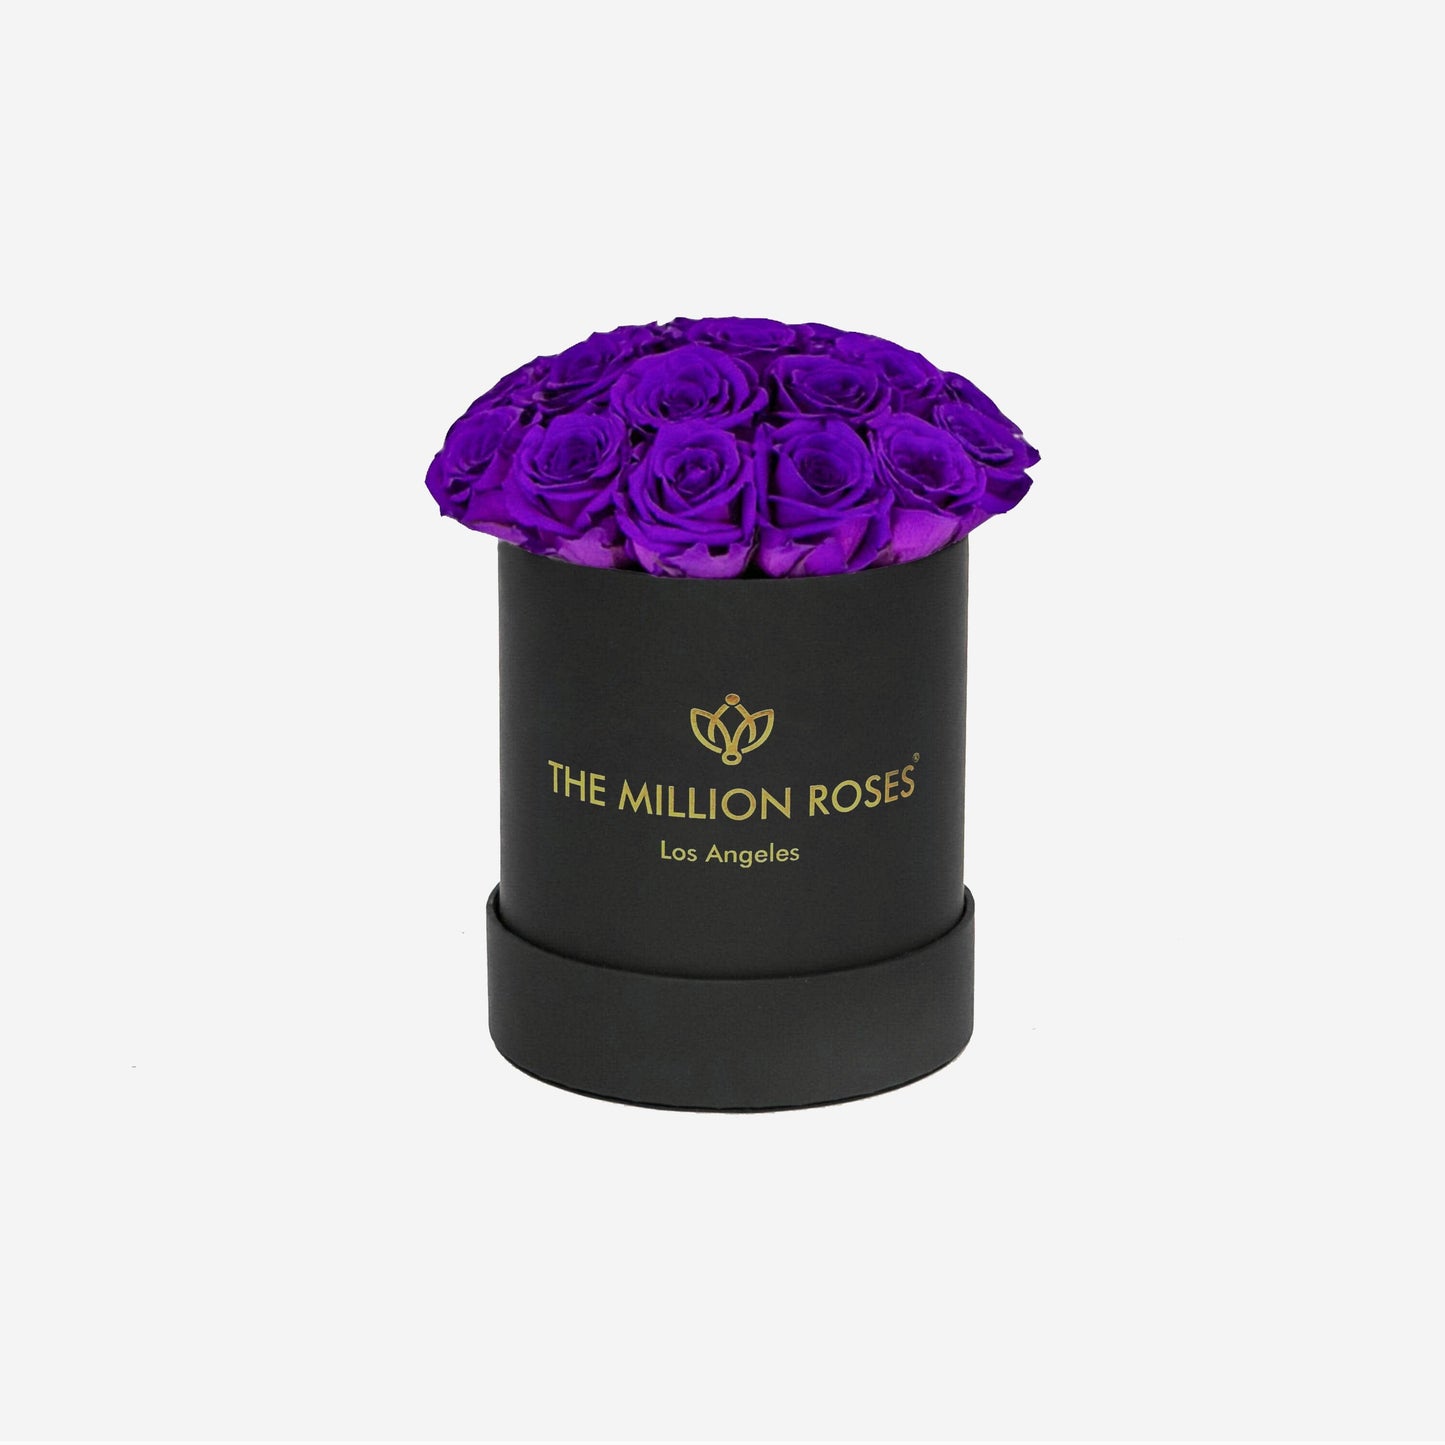 Basic Black Box | Bright Purple Roses - The Million Roses